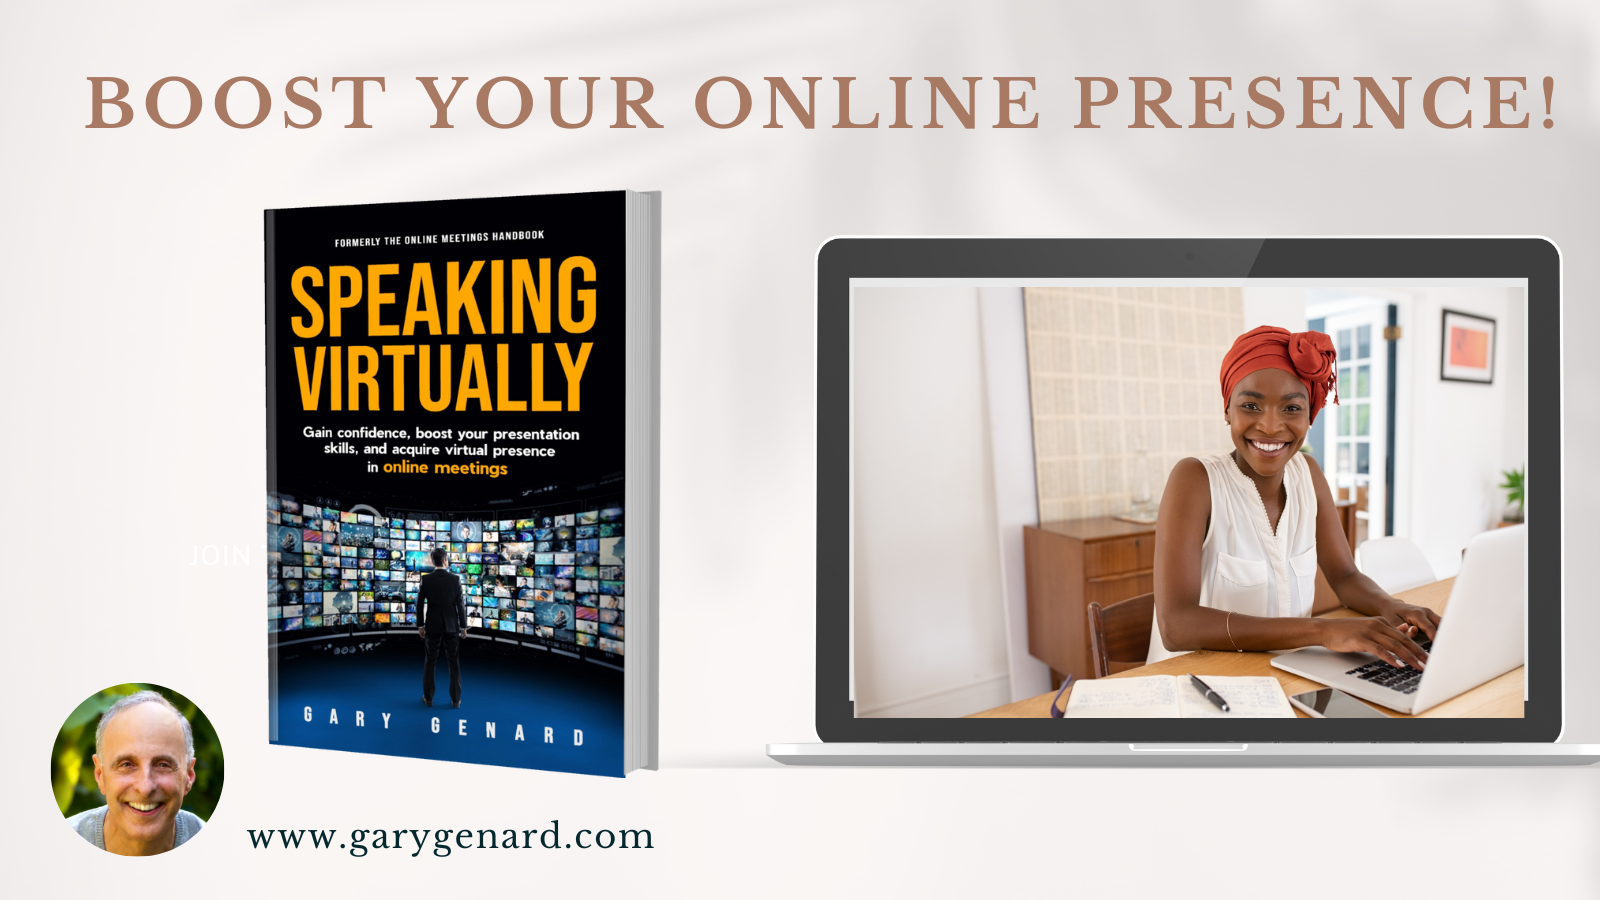 Dr. Gary Genard's book on how to speak in virtual meetings, Speaking Virtually. 